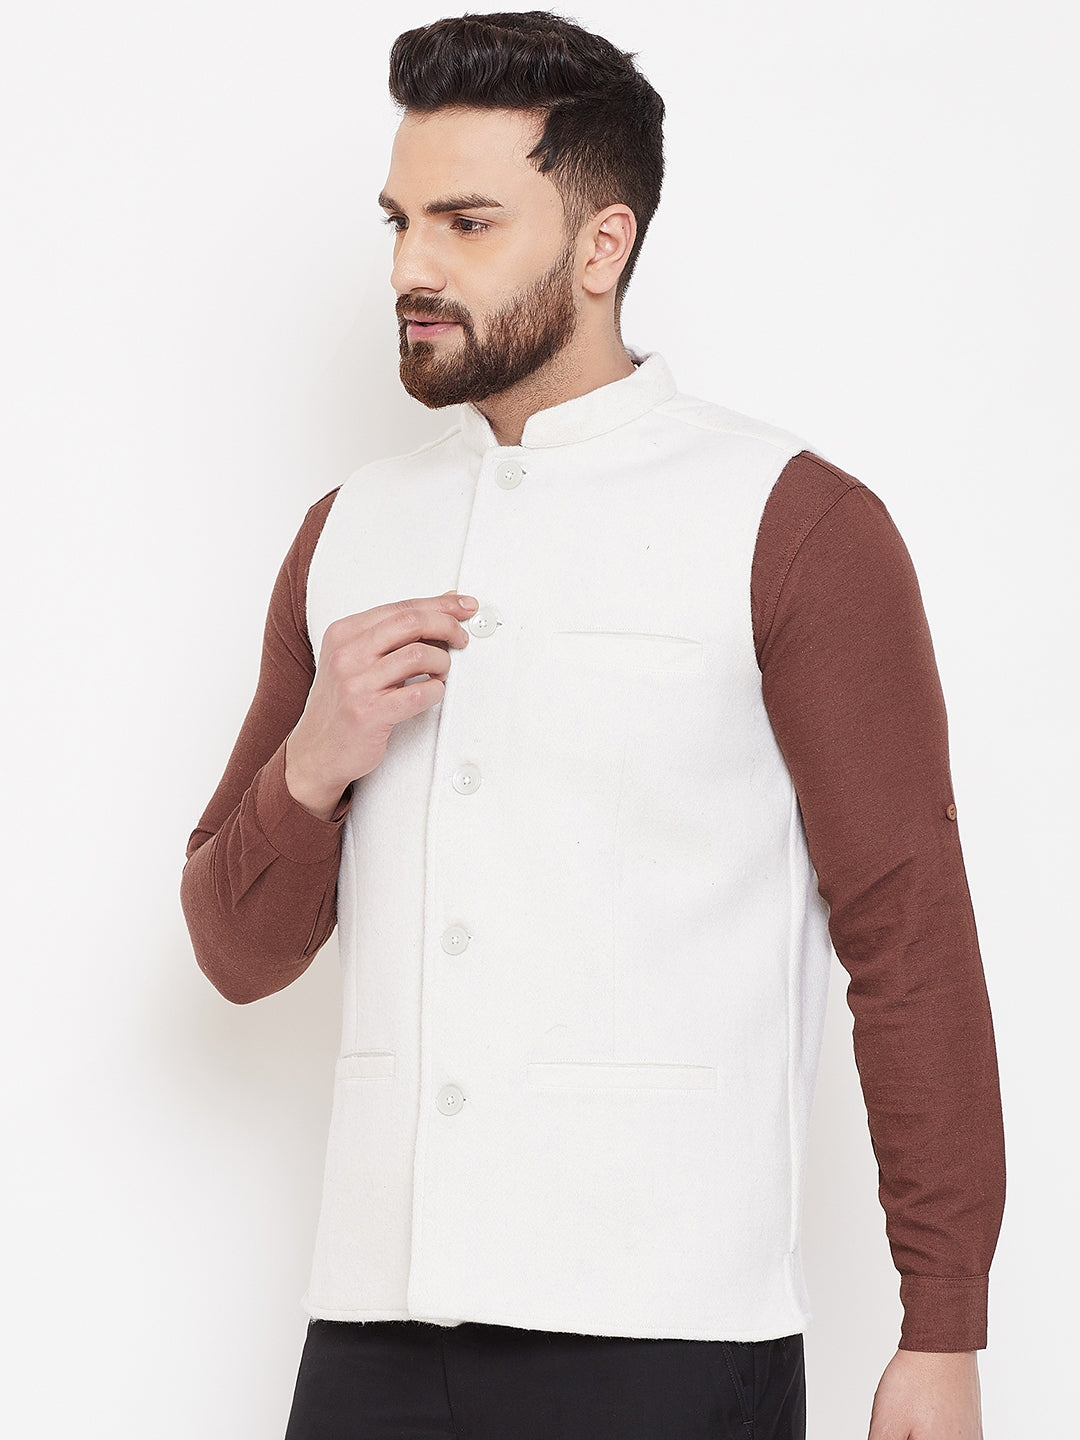 Men's White Wool Nehru Jacket  - Even Apparels